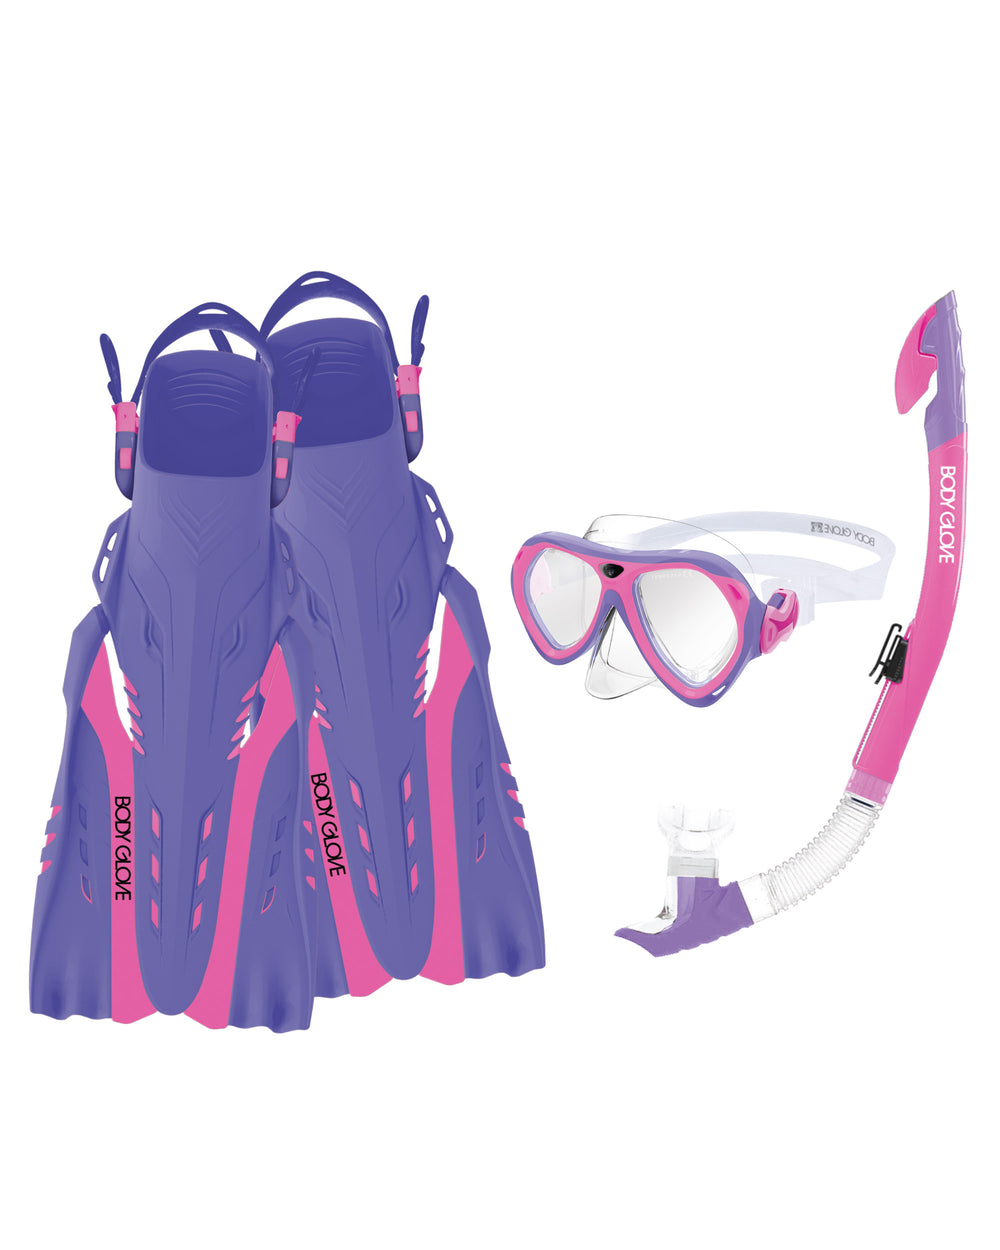 Aruba Women's Mask/Snorkel/Fin Snorkeling Set - Pink/Purple